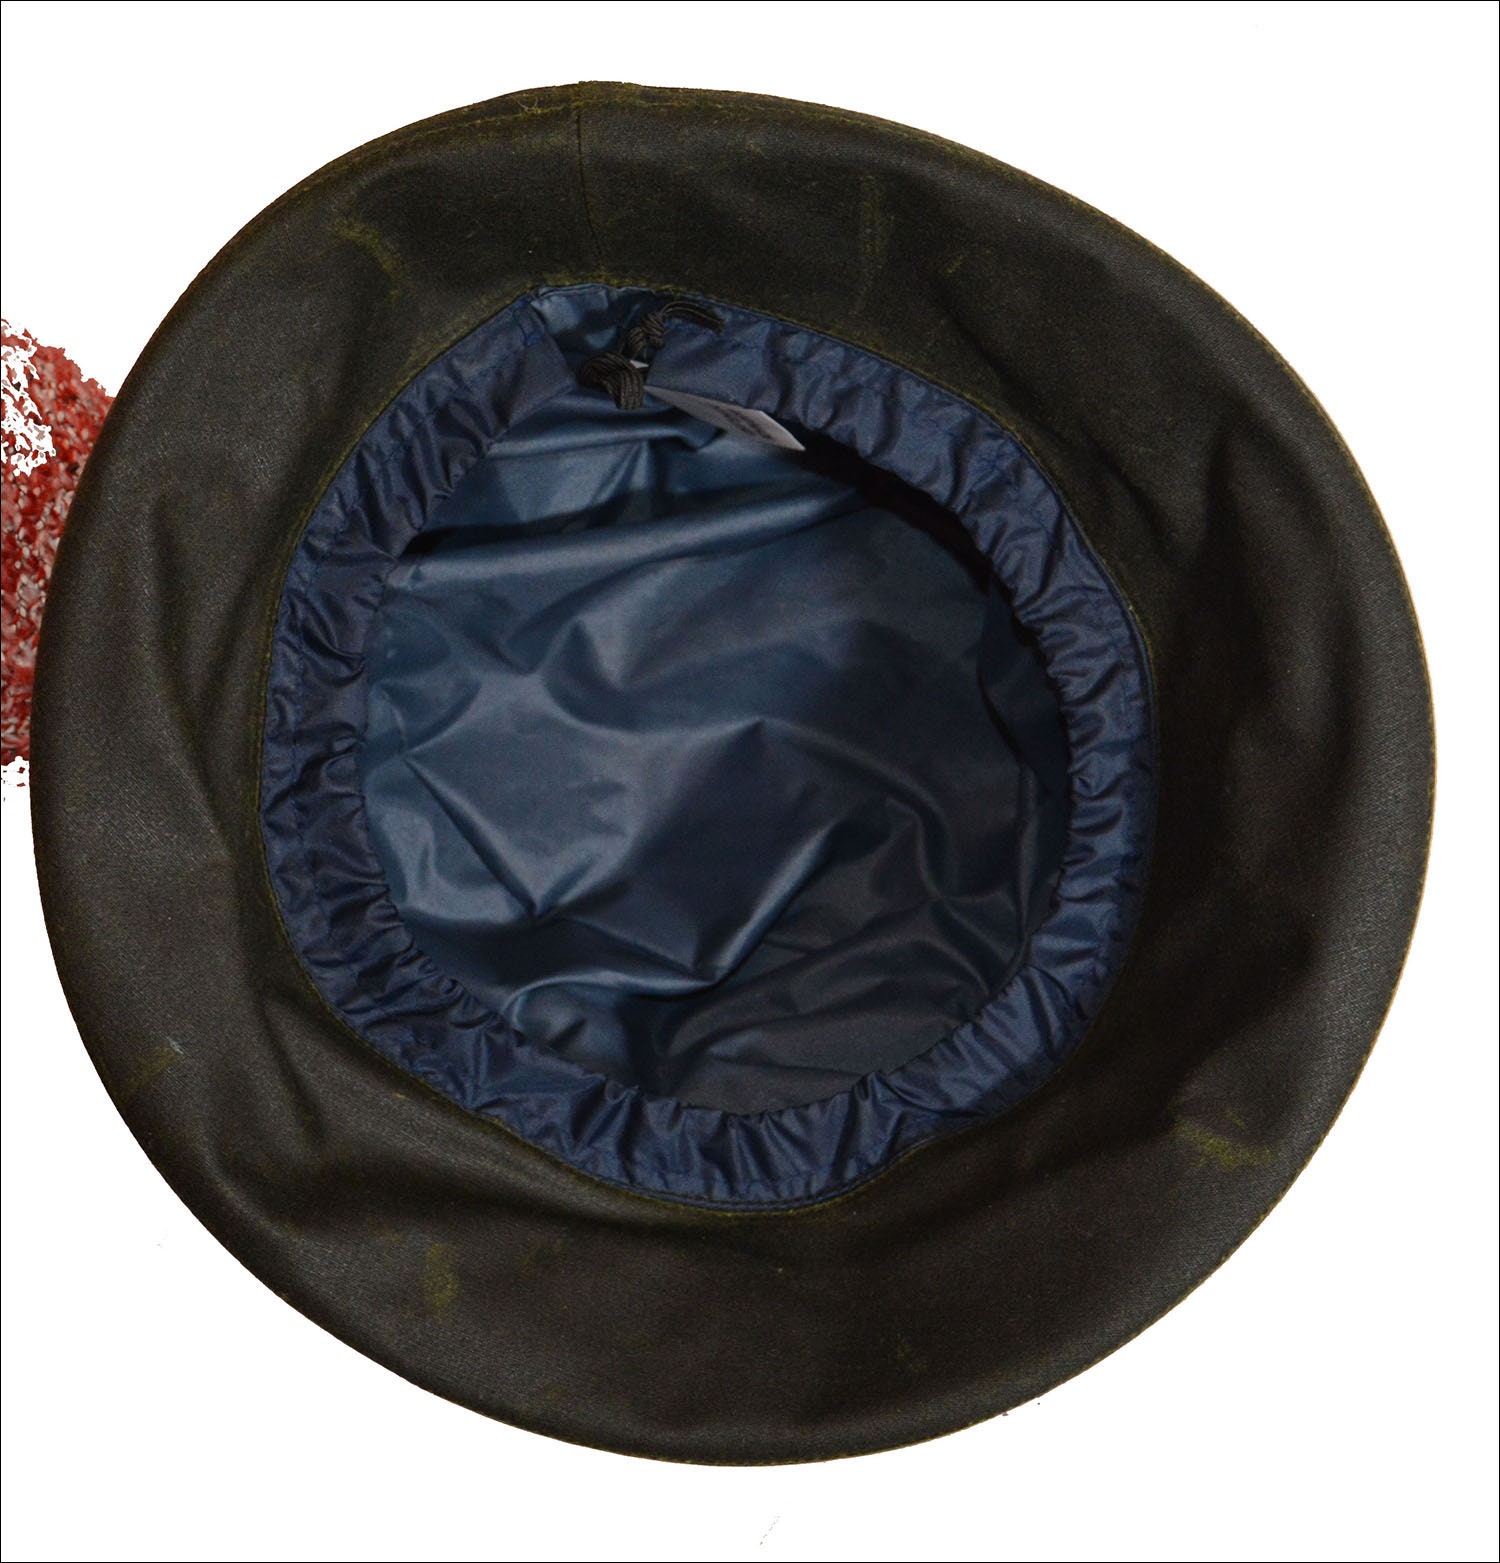 Sombrero de lluvia impermeable de plástico gorro de lluvia proteger peinado  peinado para mujeres y señoras, 10 pzas